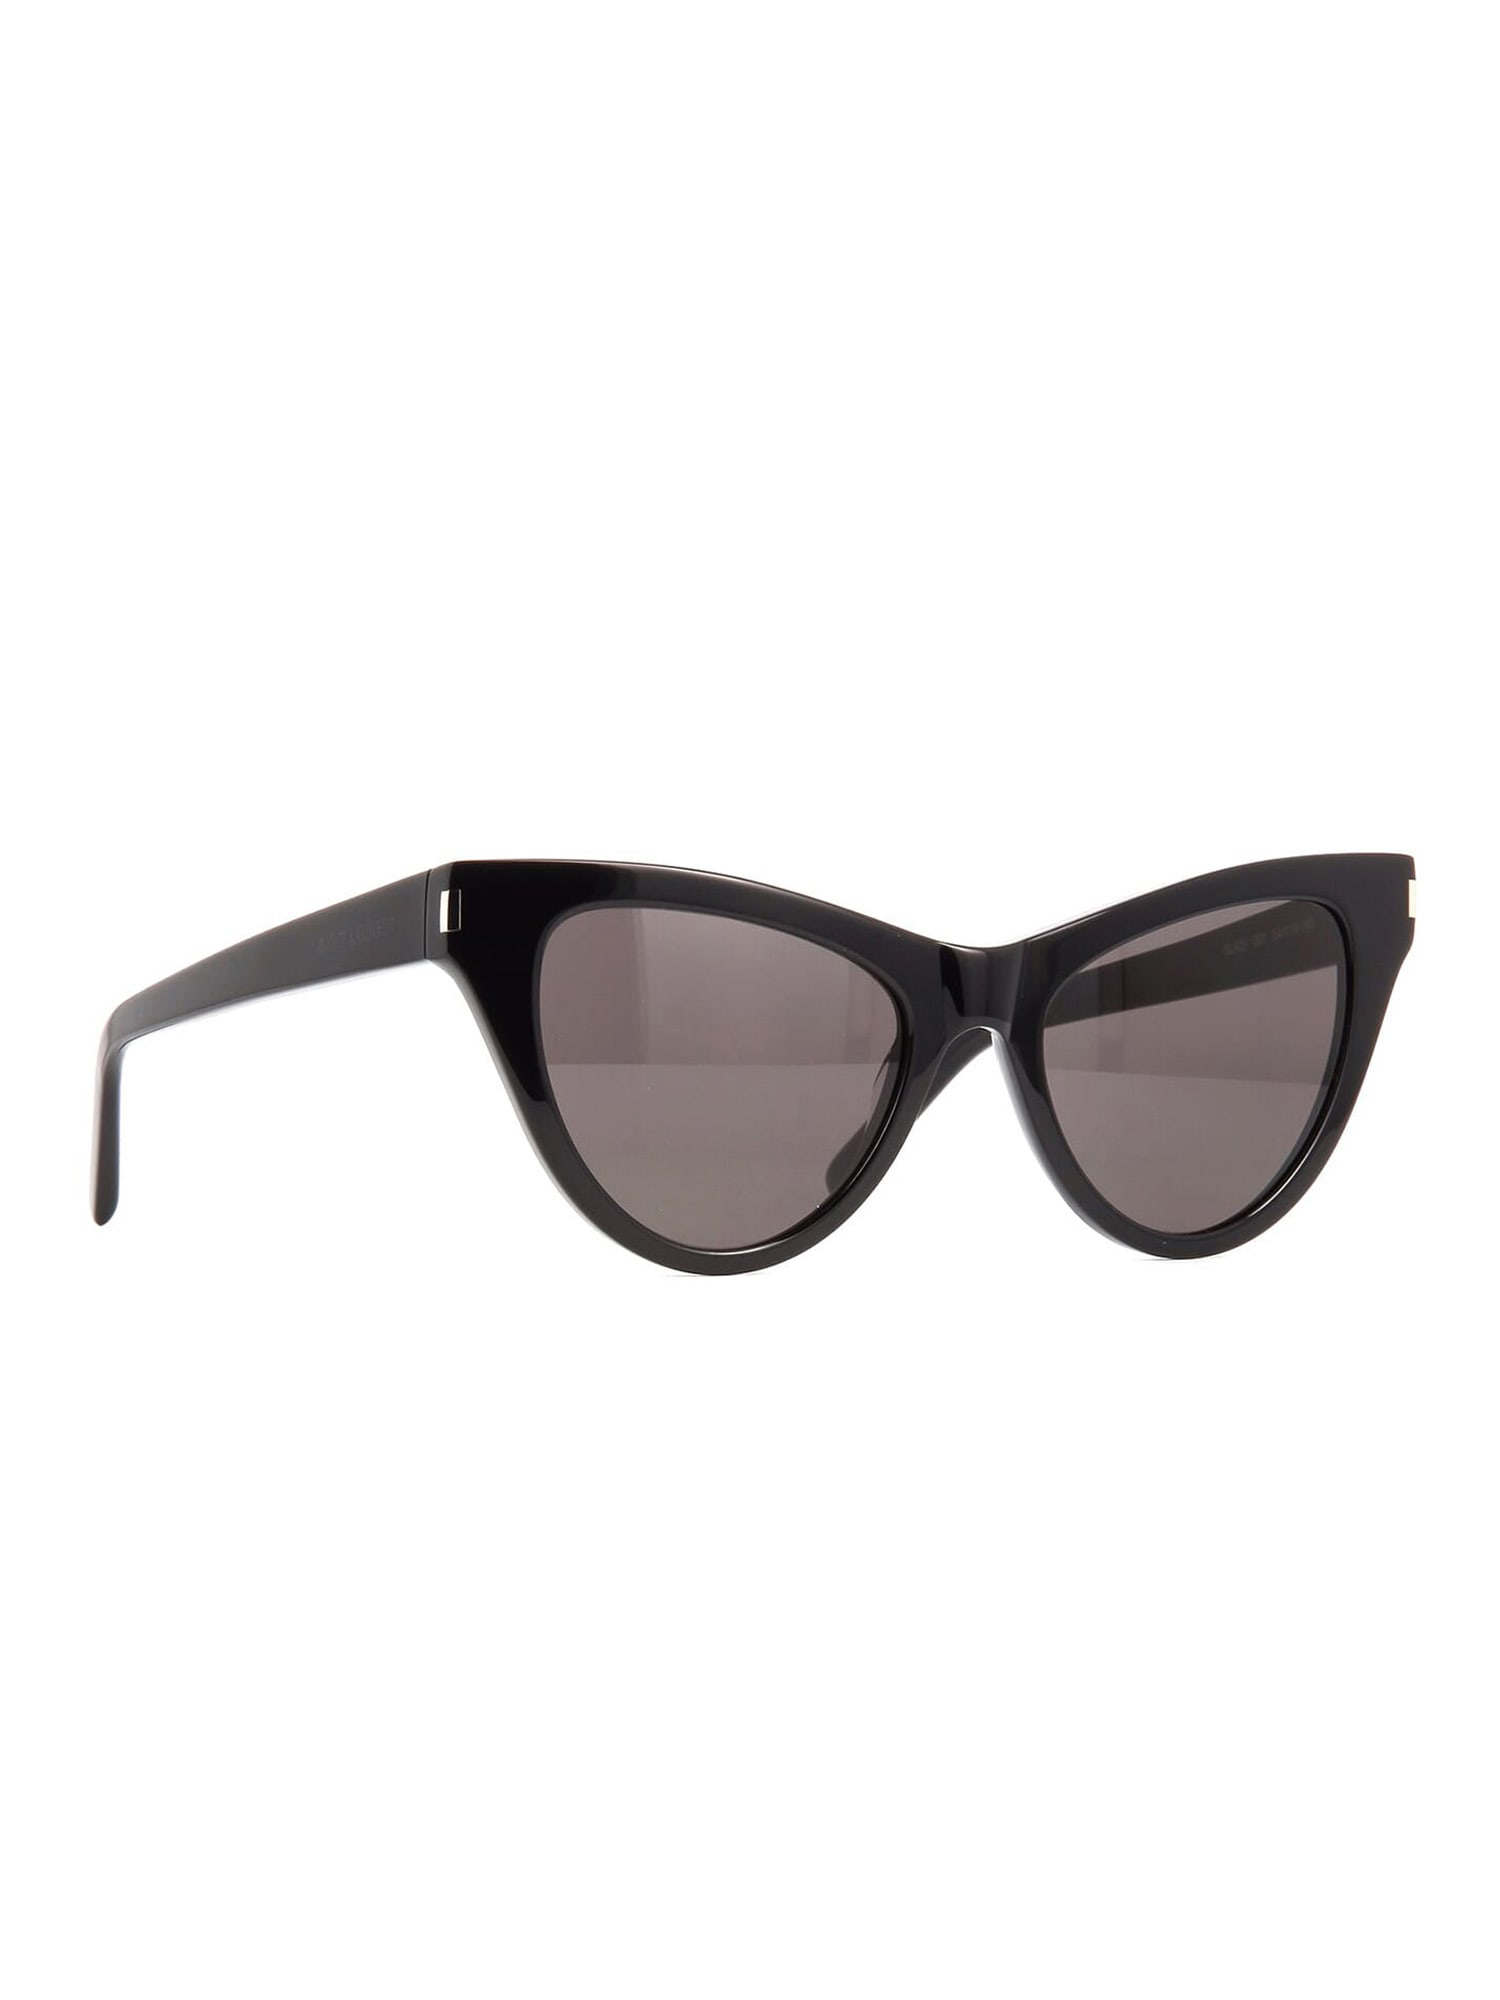 Saint Laurent Eyewear SL 425 Sunglasses